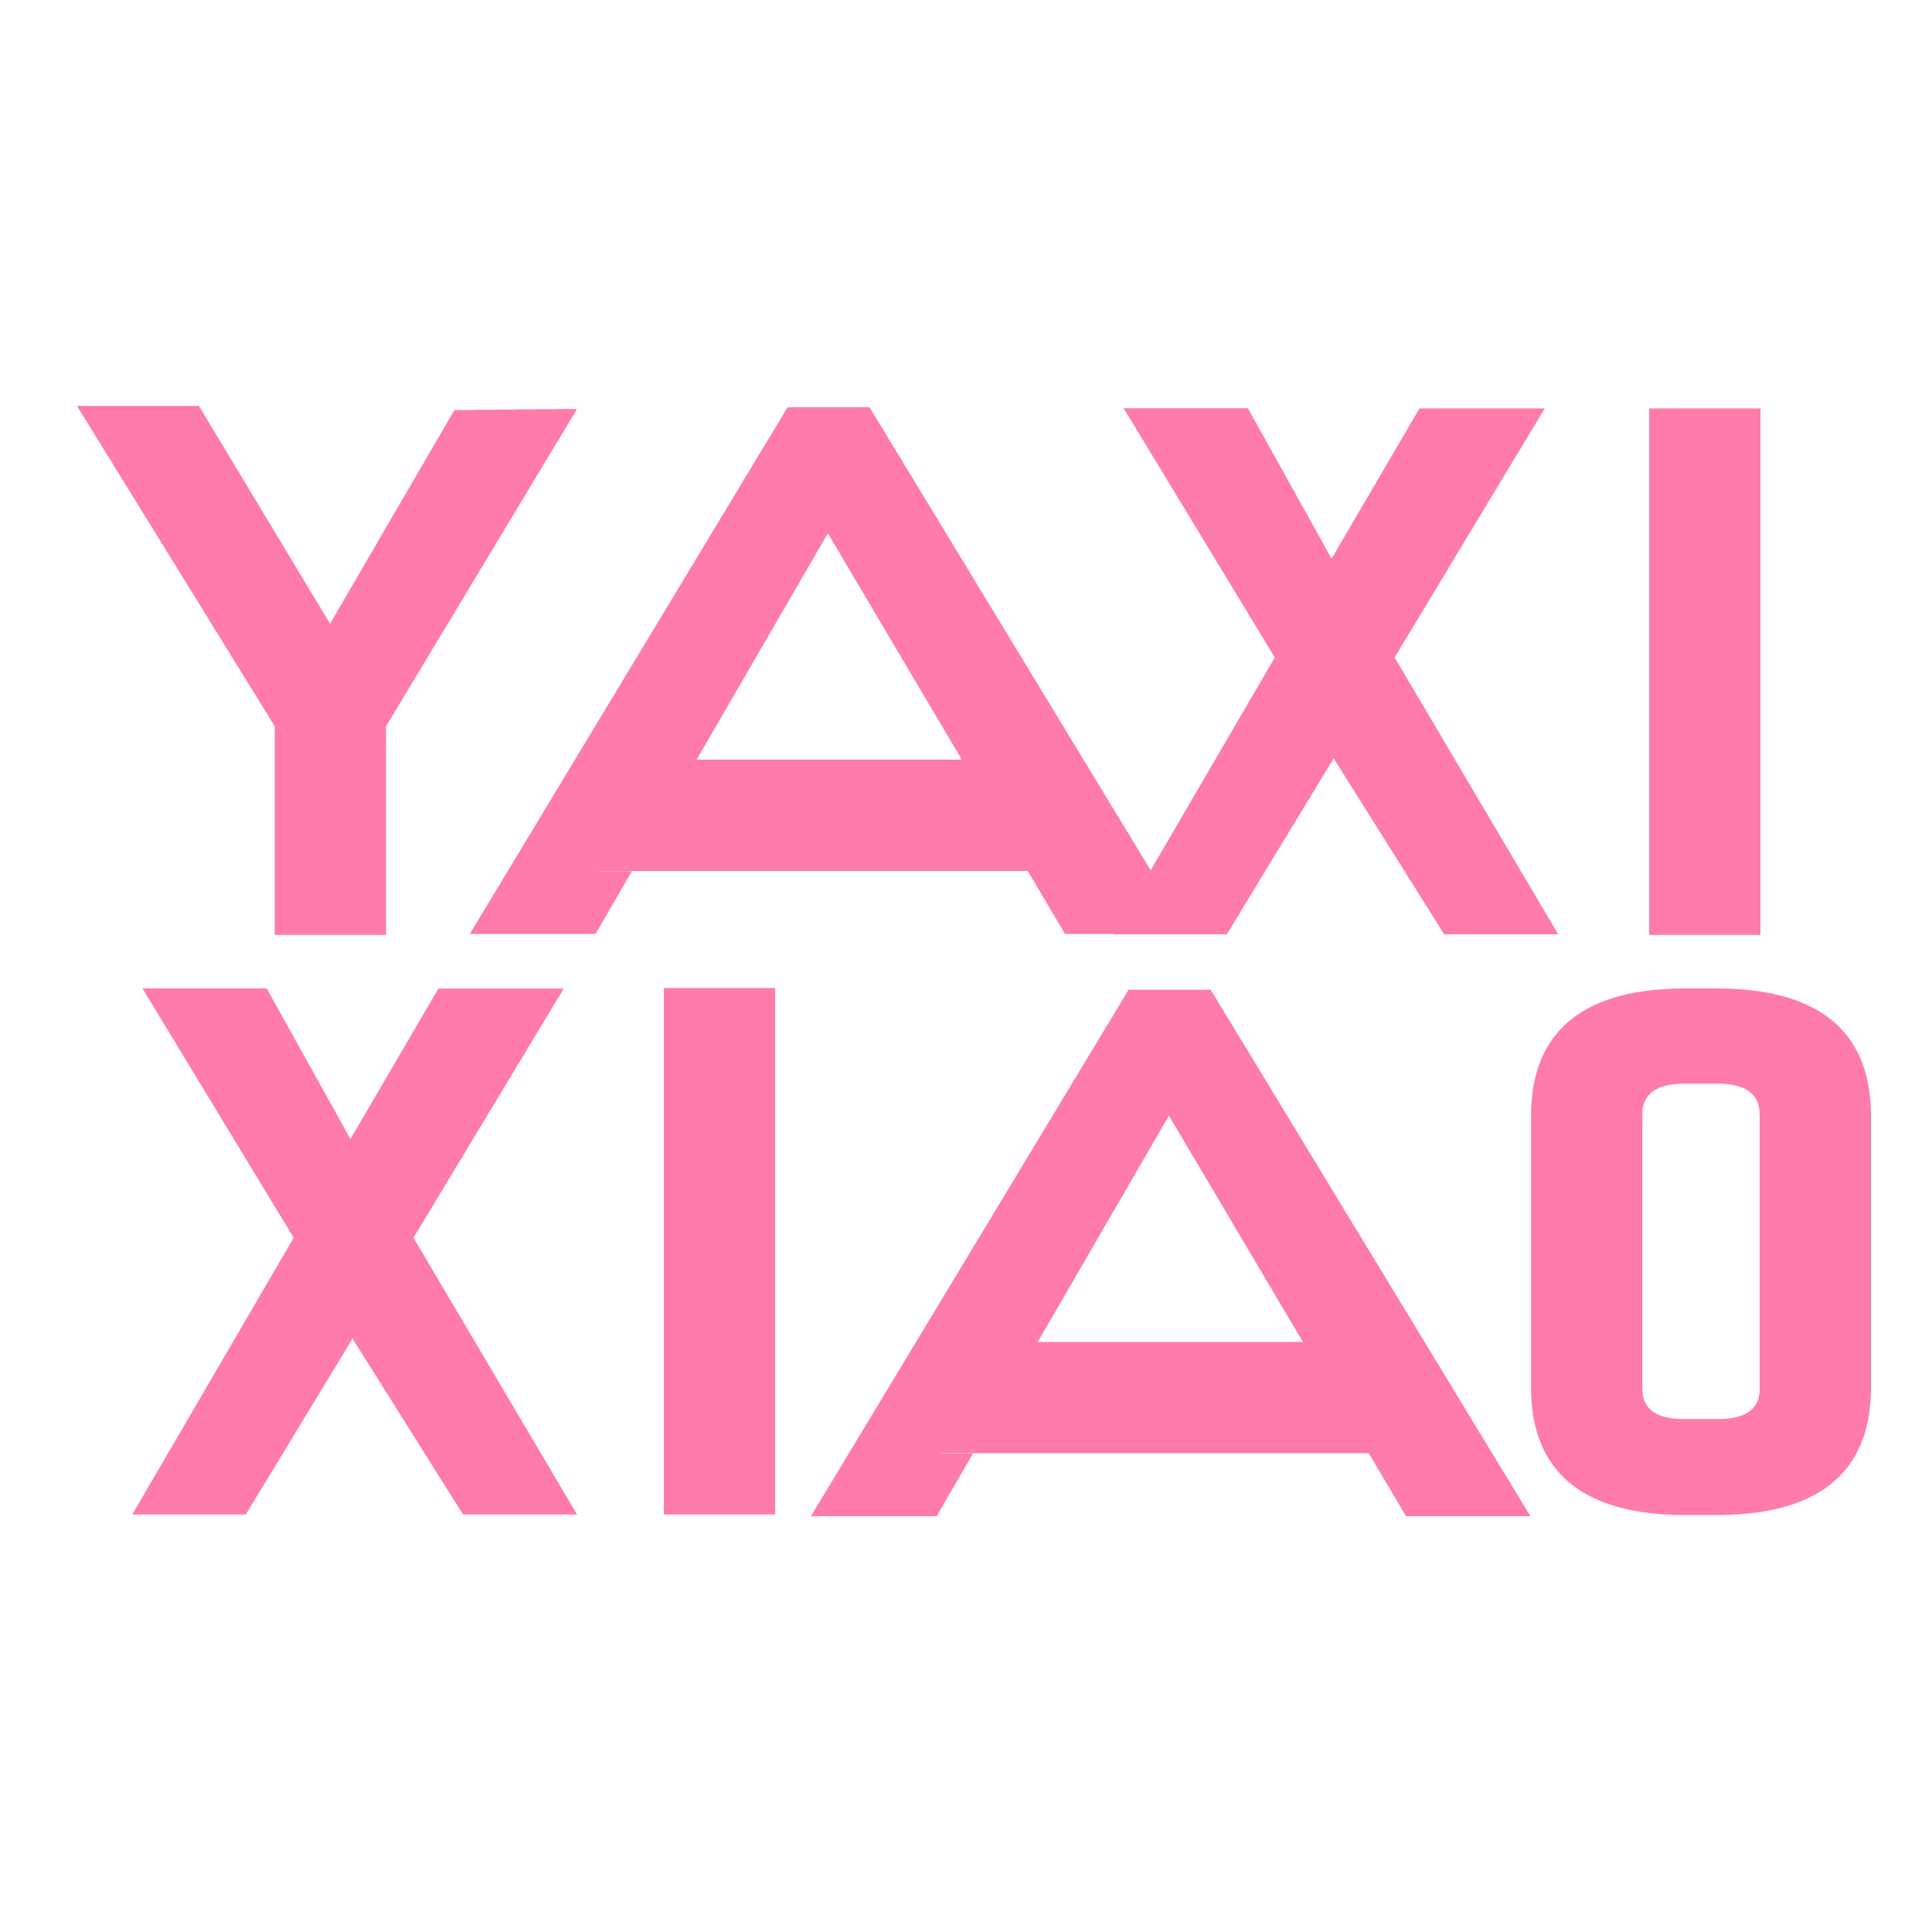 Yaxi Xiao